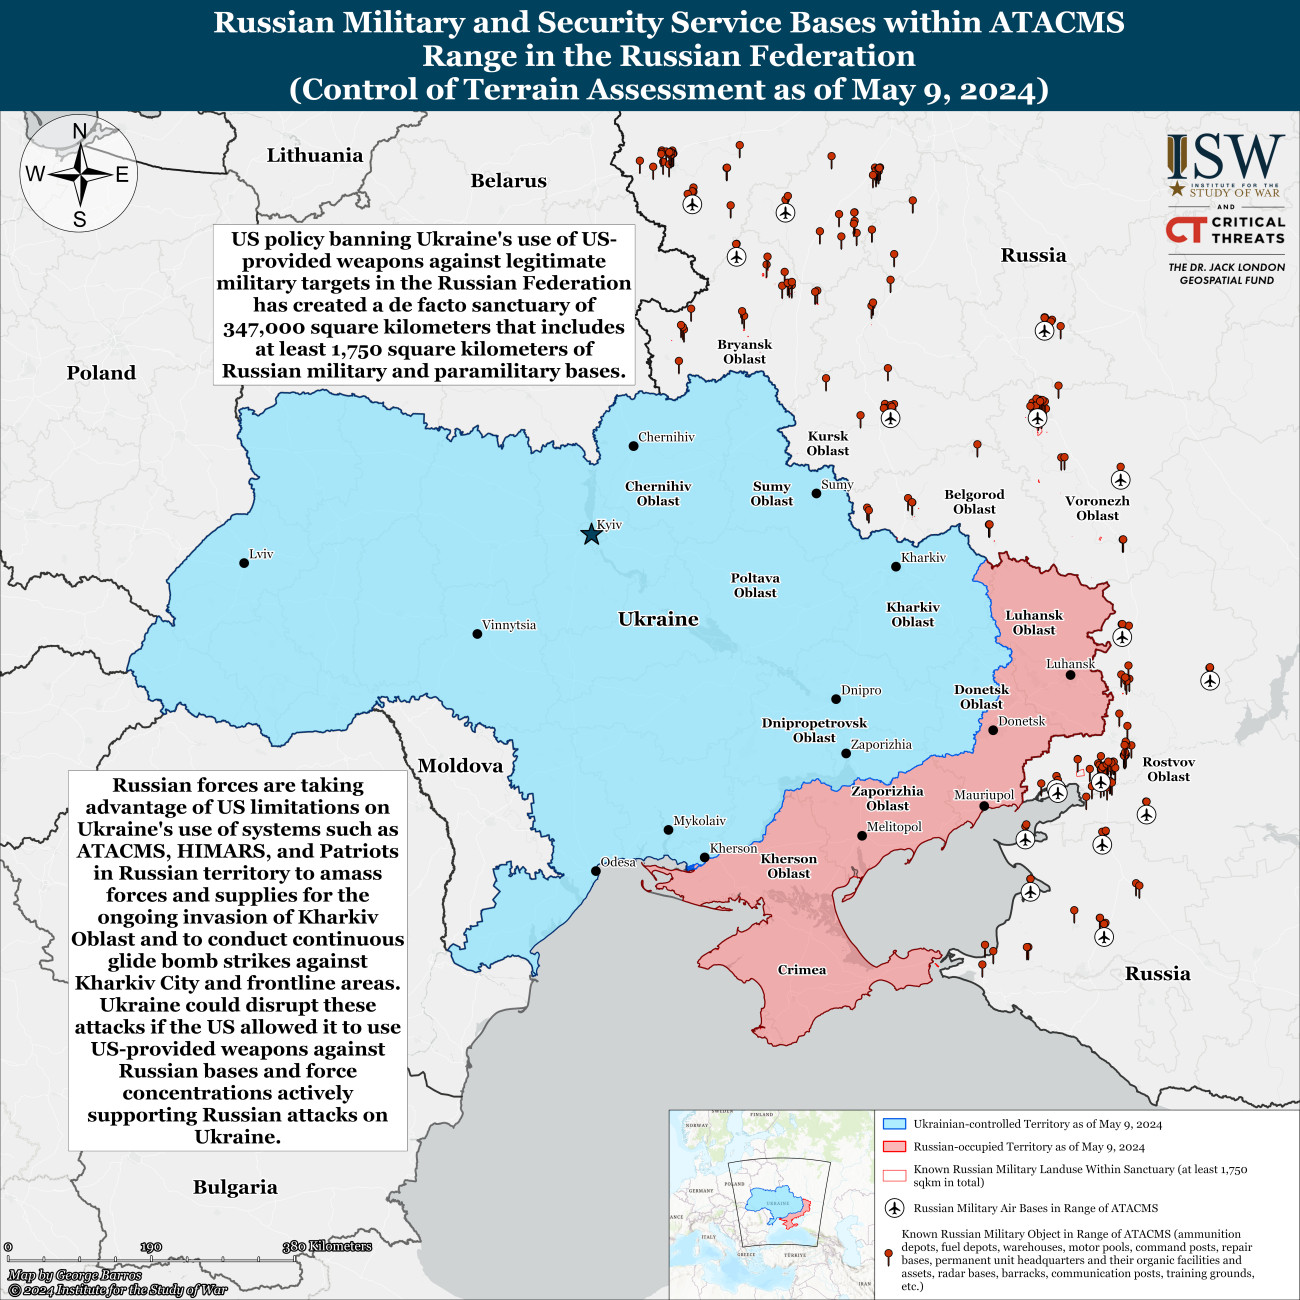 Az ukrán határ közelében található legfontosabb orosz katonai létesítmények és repülőterek. A piros pontok a bázisokat, a körben lévő repülőgépek a légitámaszpontokat jelölik. Ezek mind a nyugati csapásmérő fegyverek hatótávolságán belül vannak. Forrás: ISW